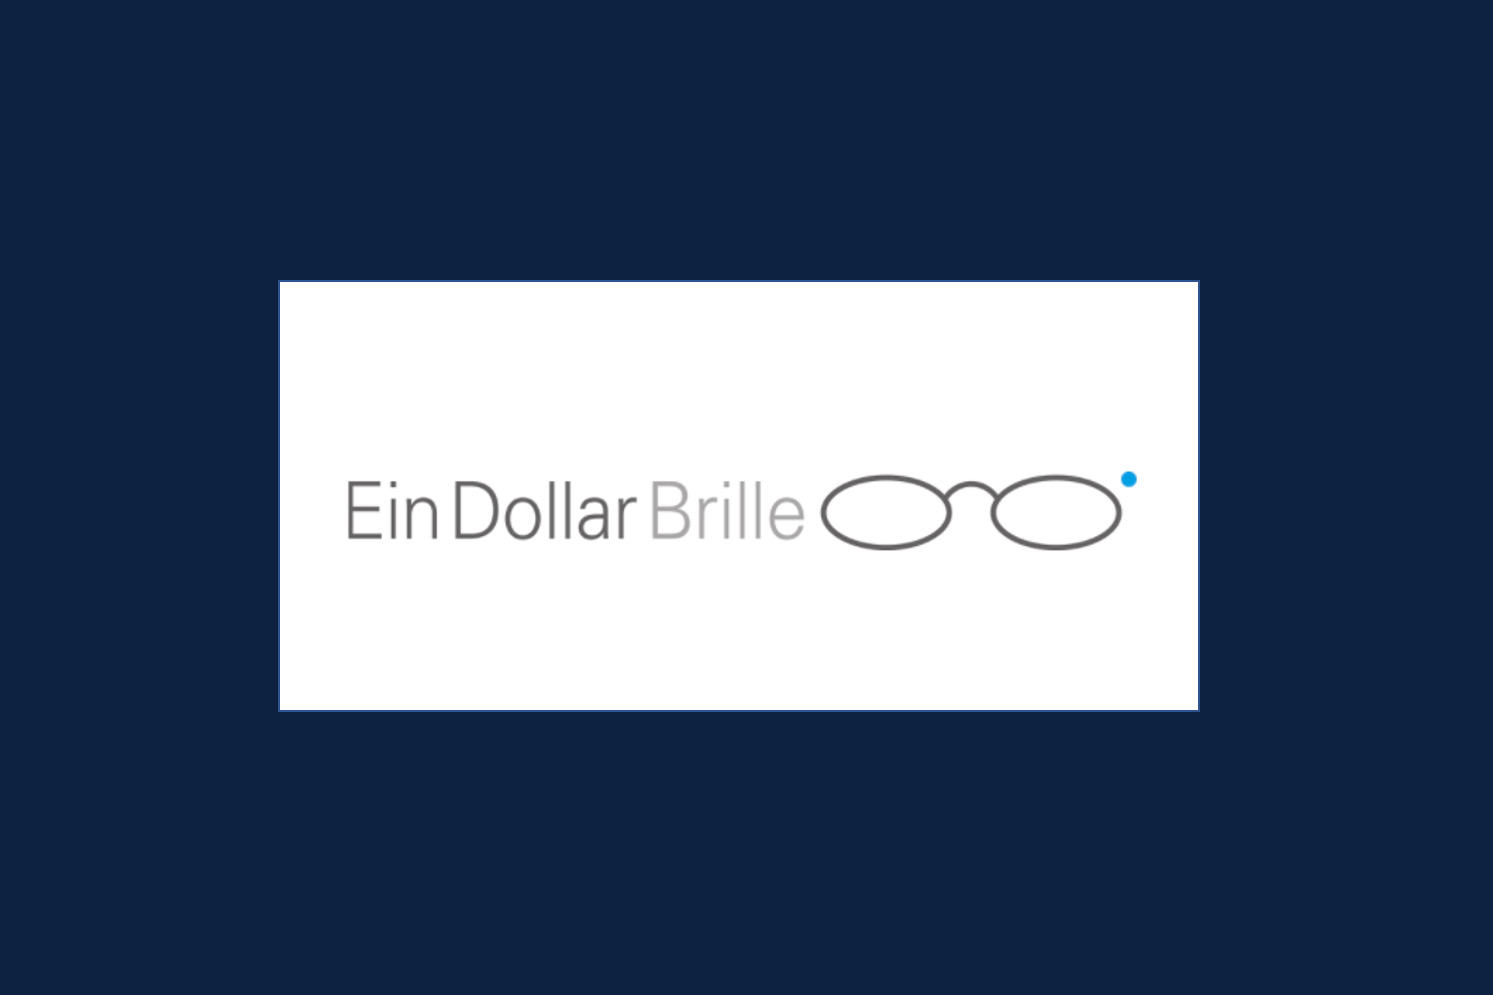 Logo der Website von der Ein Dollar Brille